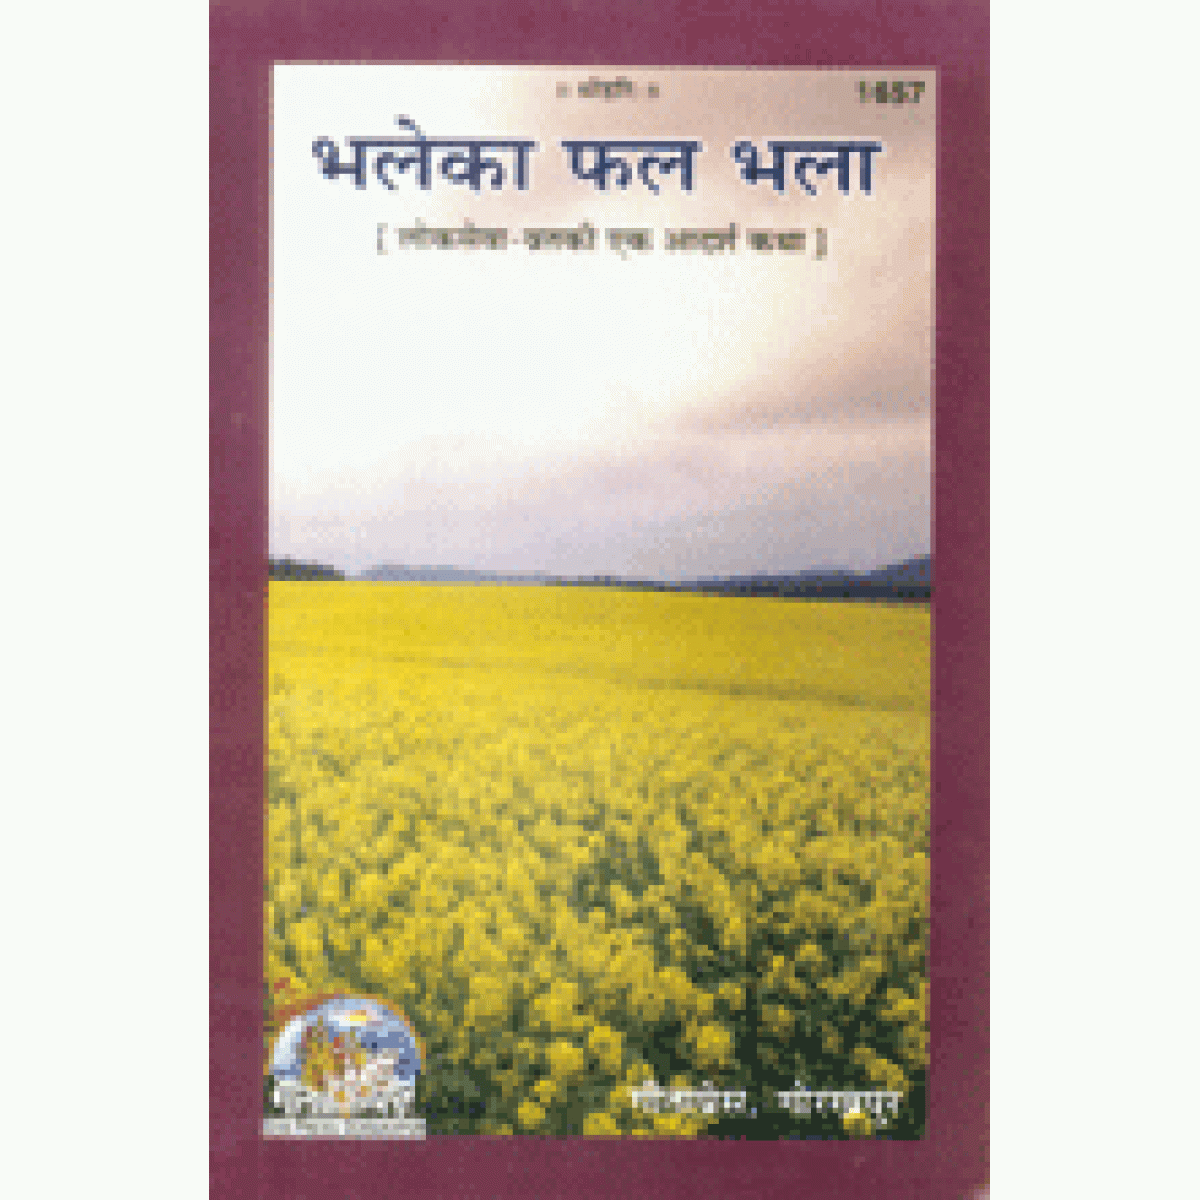 Bhale Ka Phal Bhala (Hindi) by Gita Press